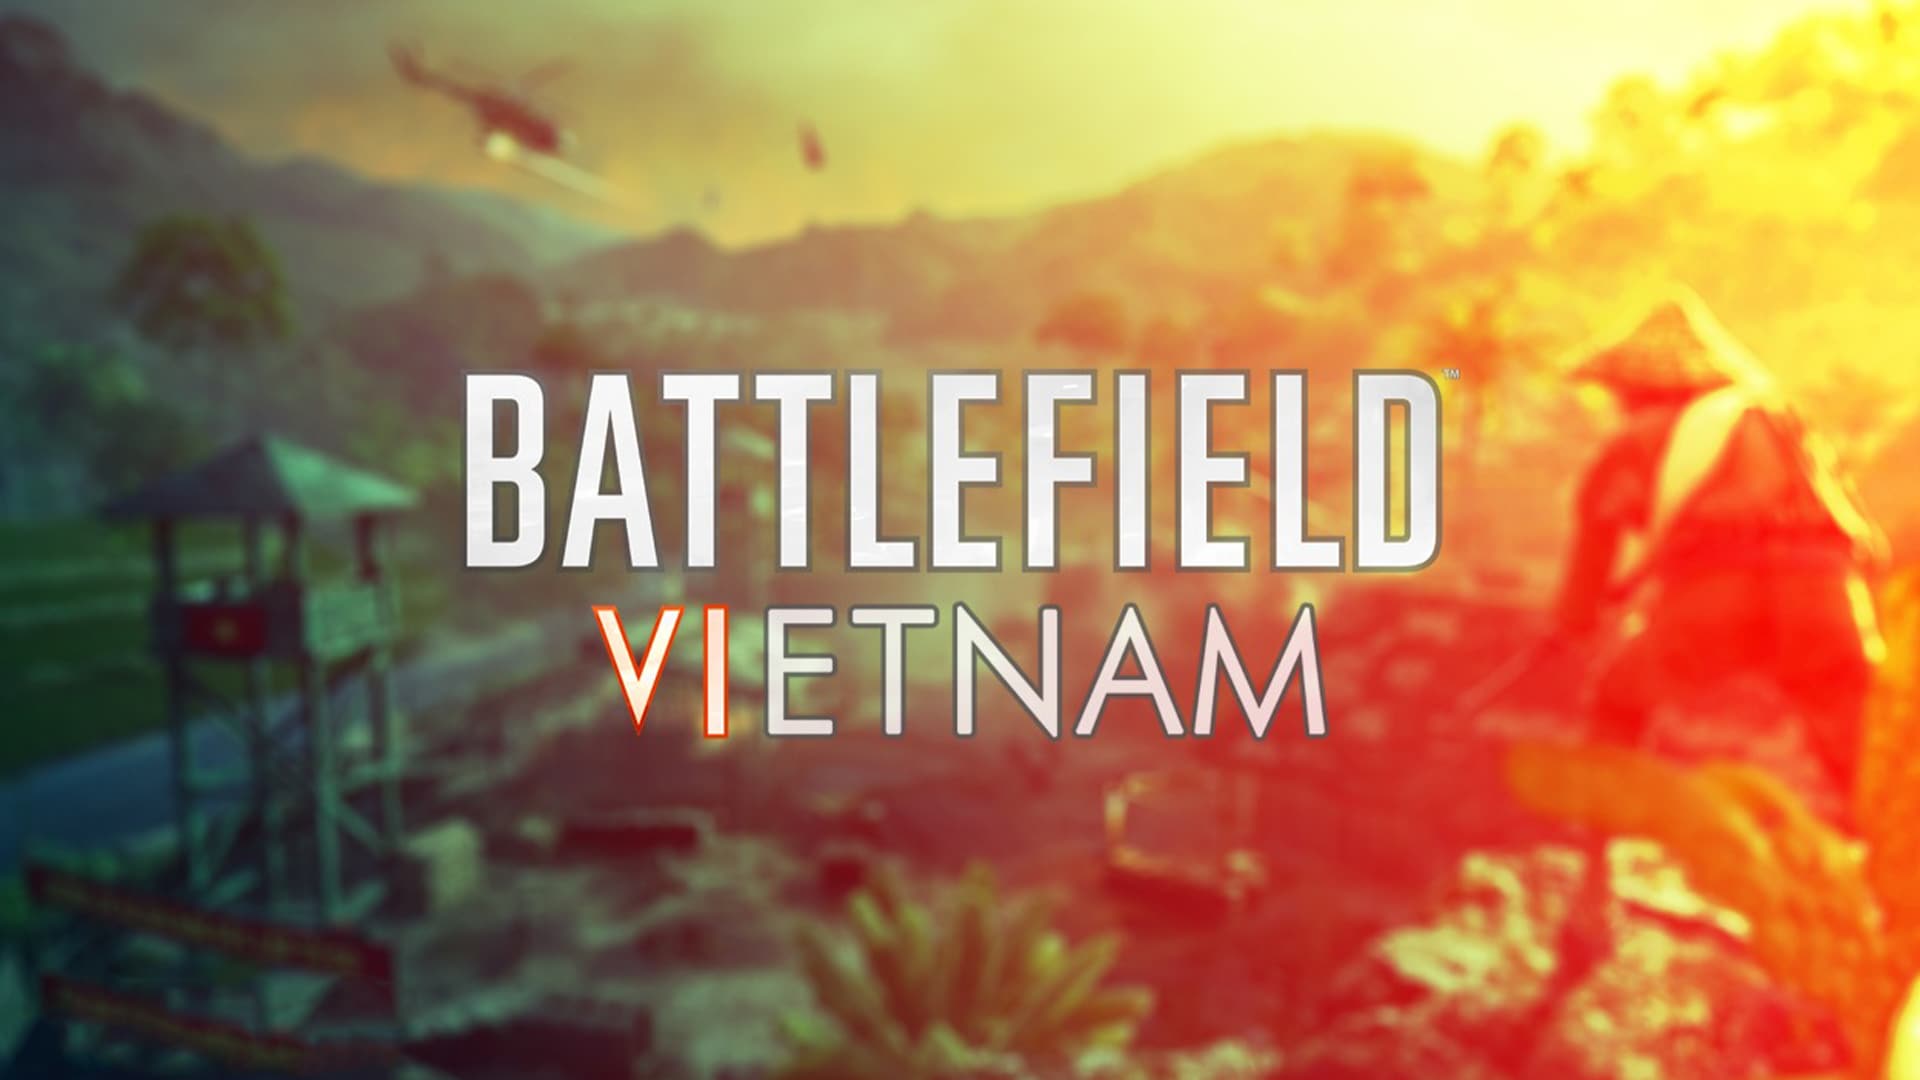 دانلود ترینر بازی Battlefield Vietnam